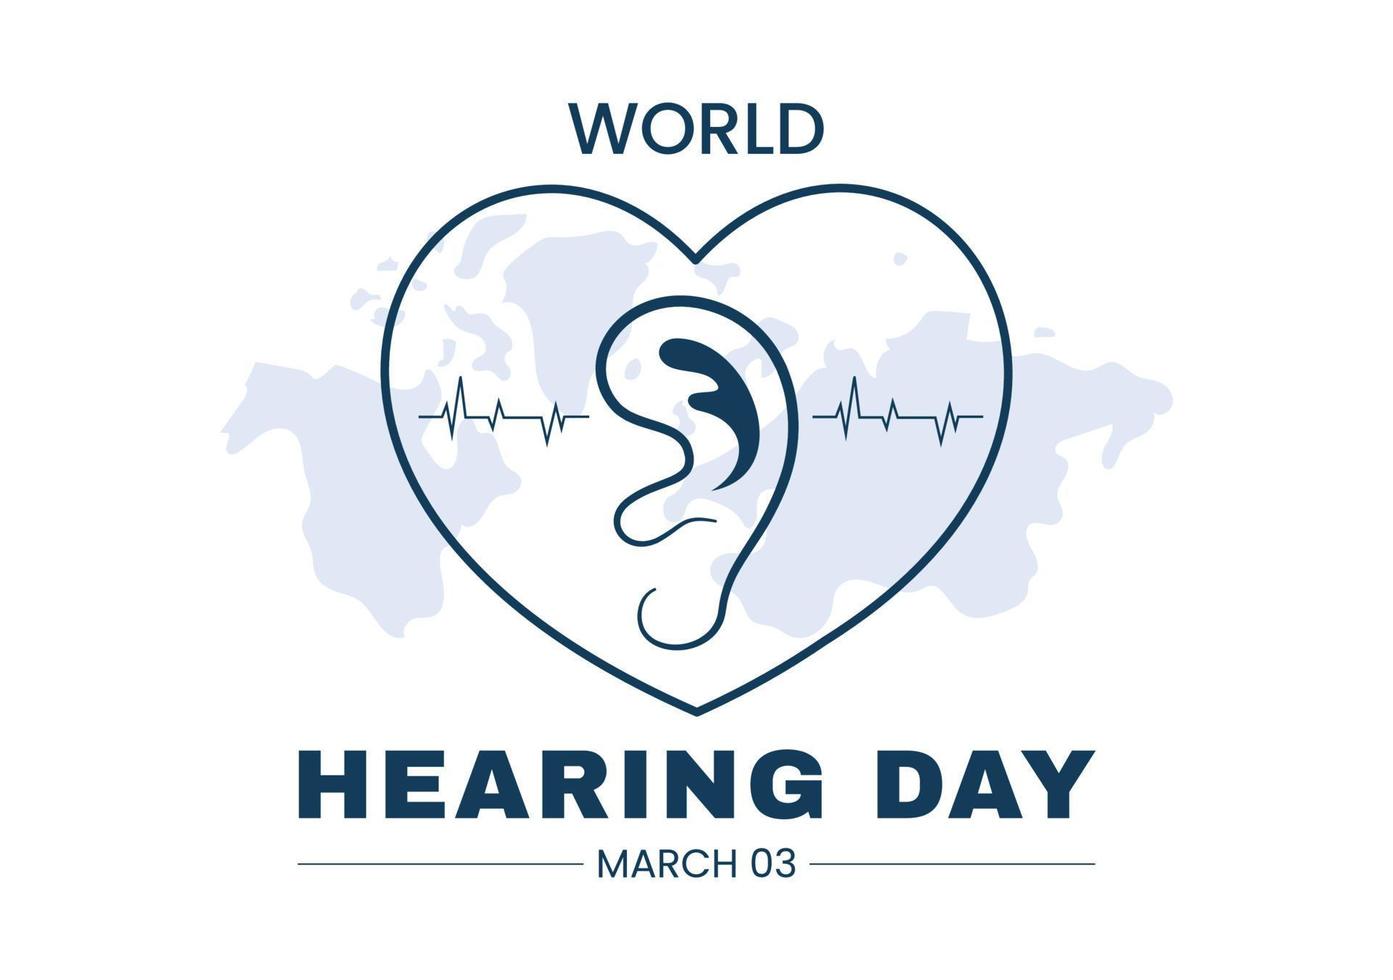 ilustración del día mundial de la audición para crear conciencia sobre cómo prevenir la sordera para el banner web o la página de inicio en plantillas planas dibujadas a mano de dibujos animados vector